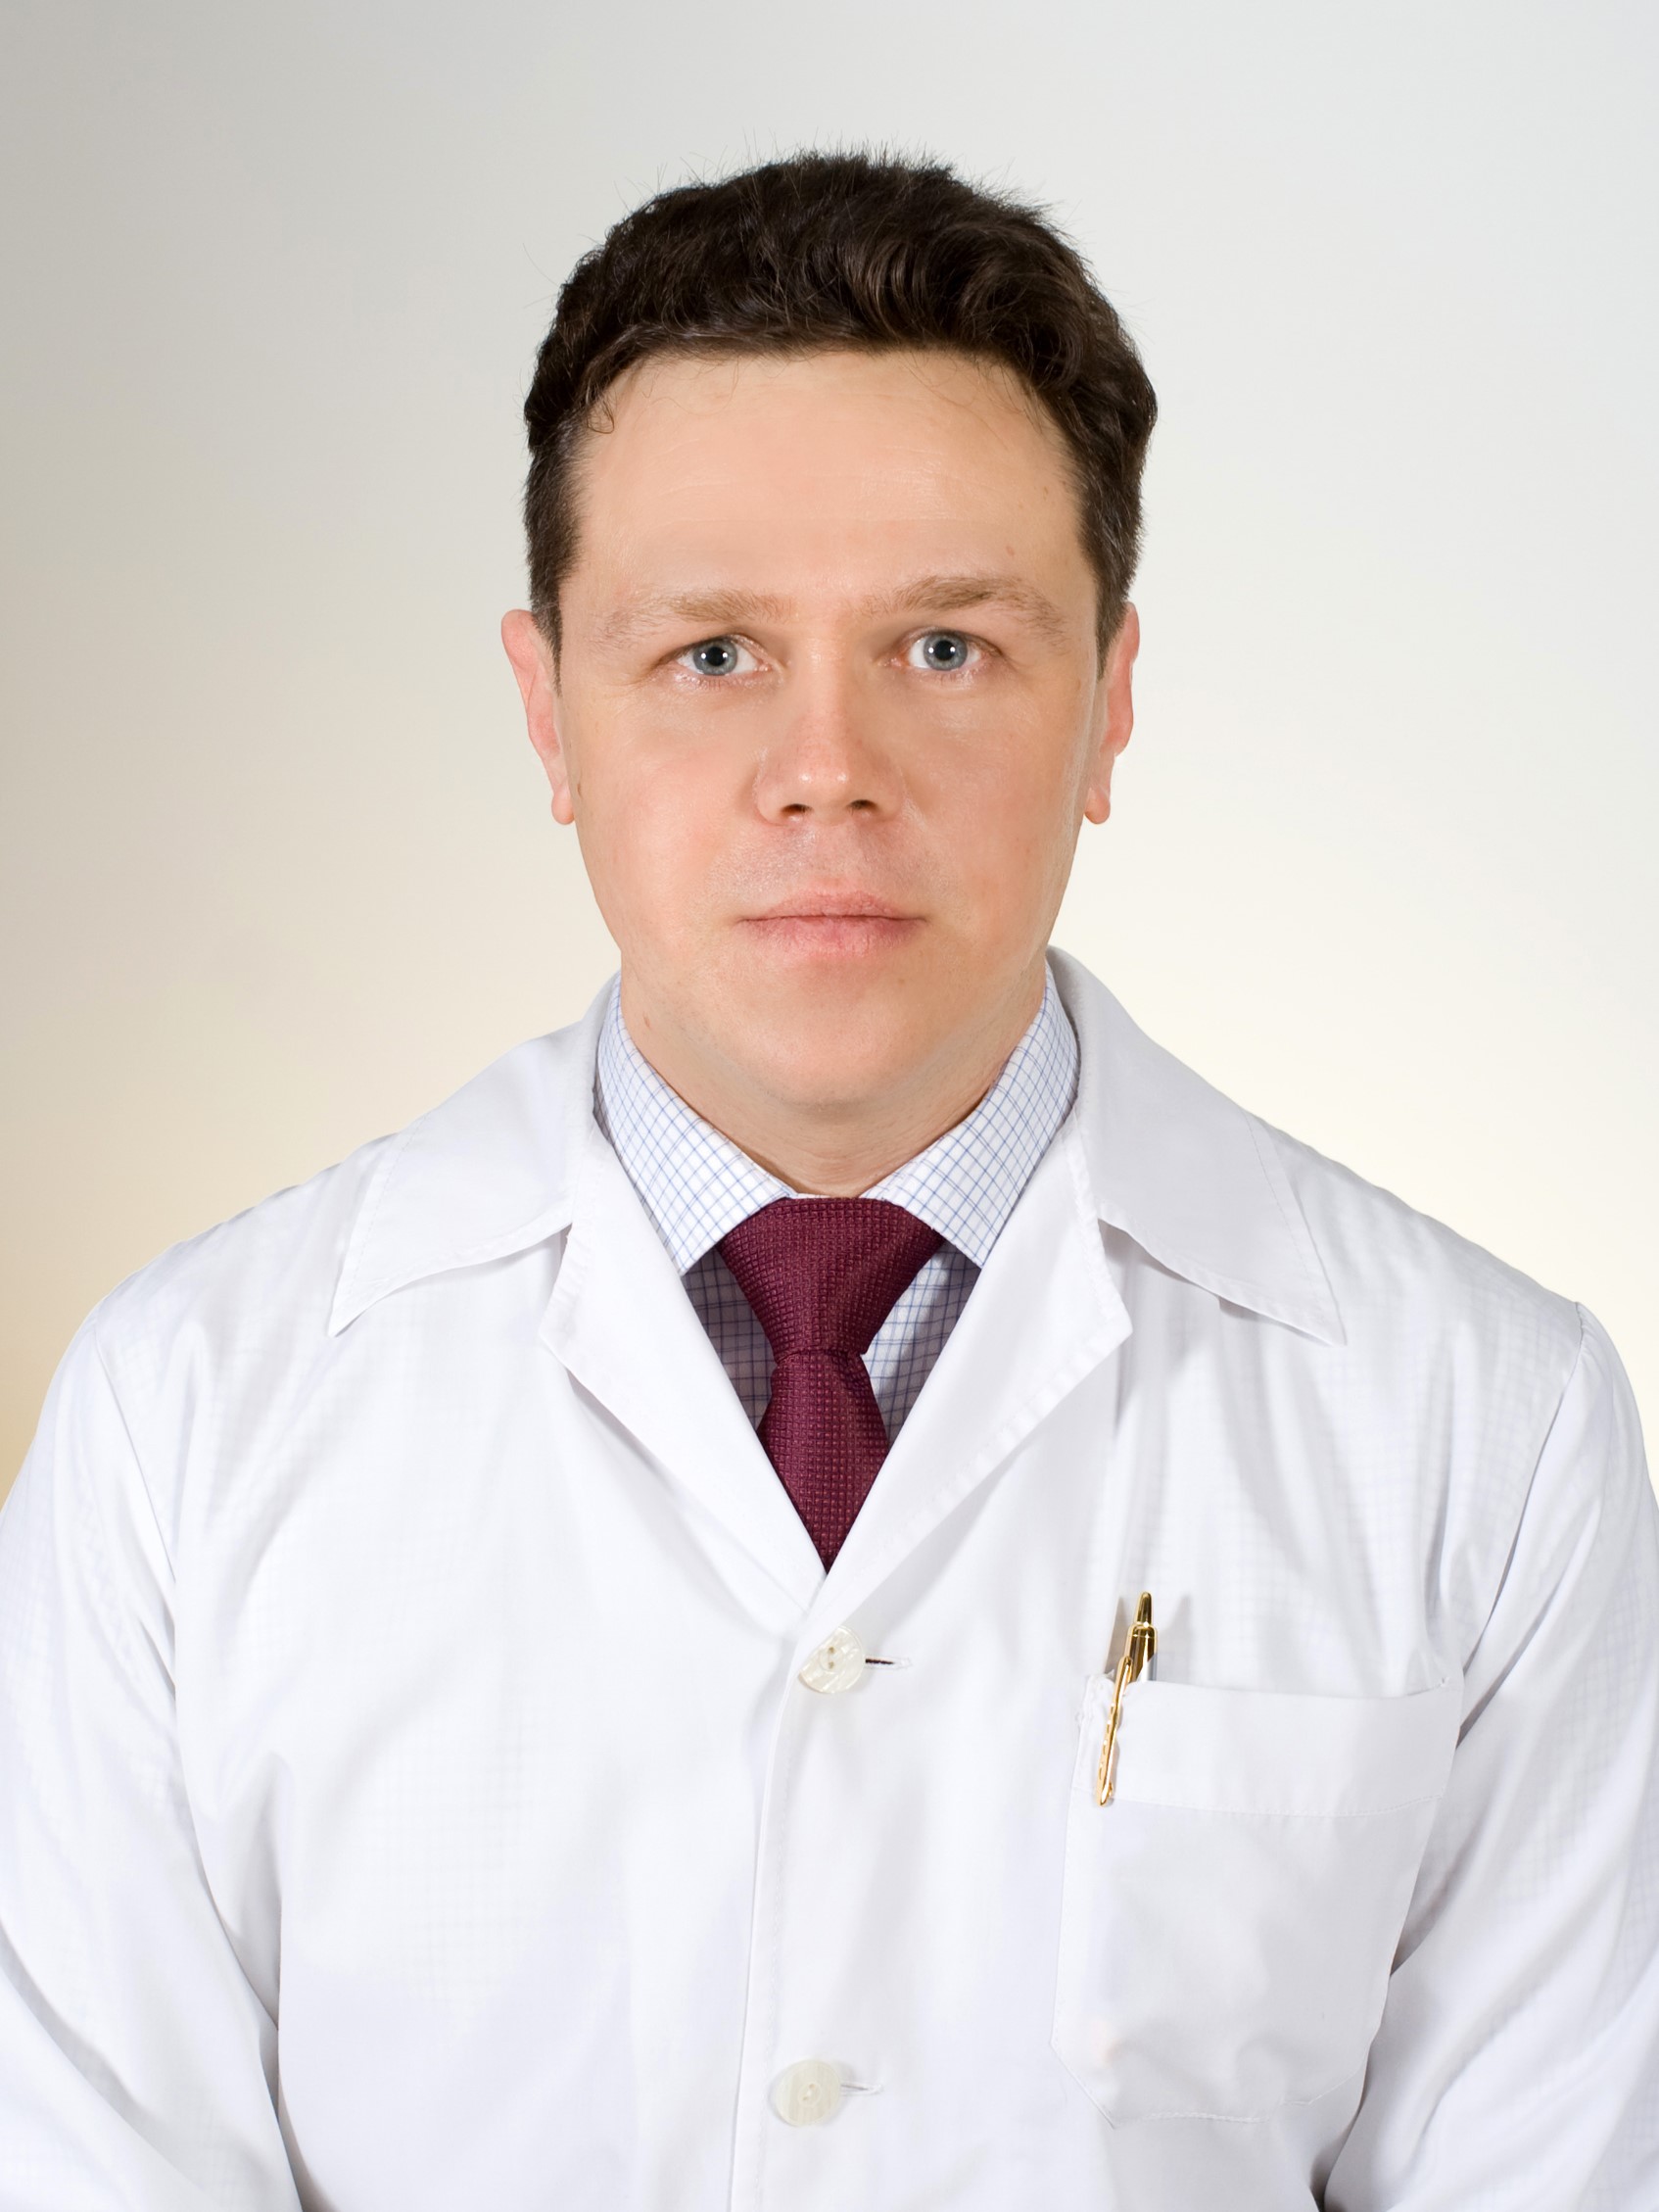 Краснов Алексей Александрович, кафедра психиатрии и психотерапии с клиникой